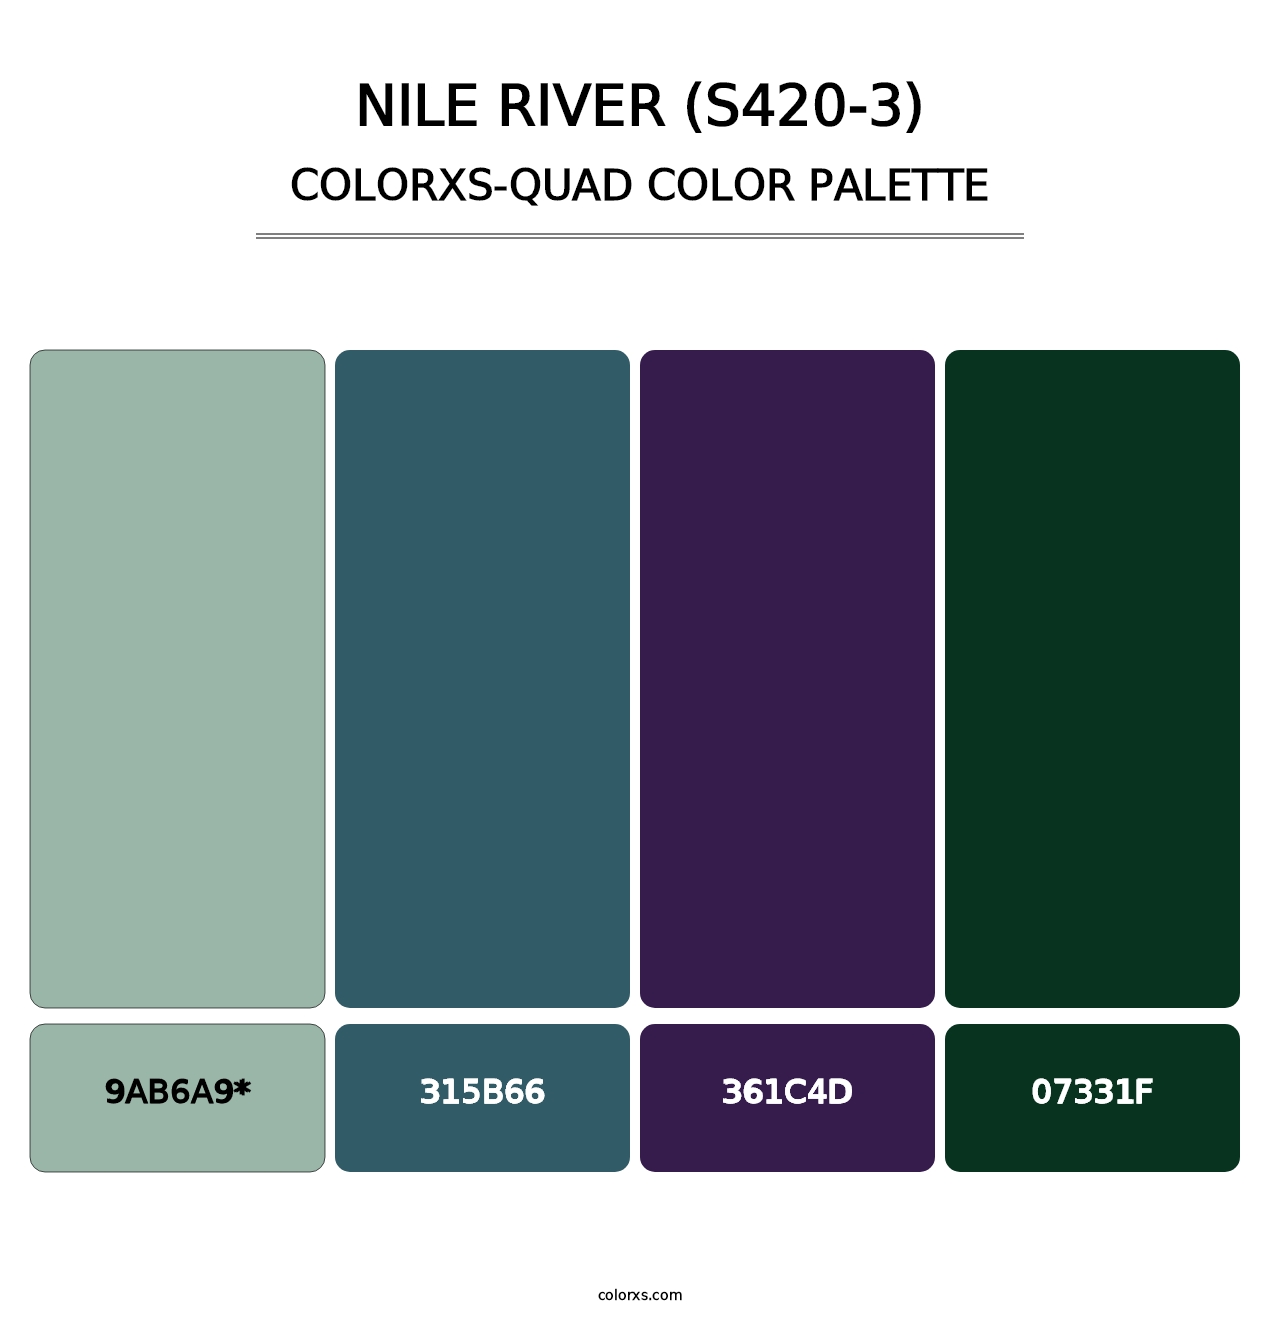 Nile River (S420-3) - Colorxs Quad Palette